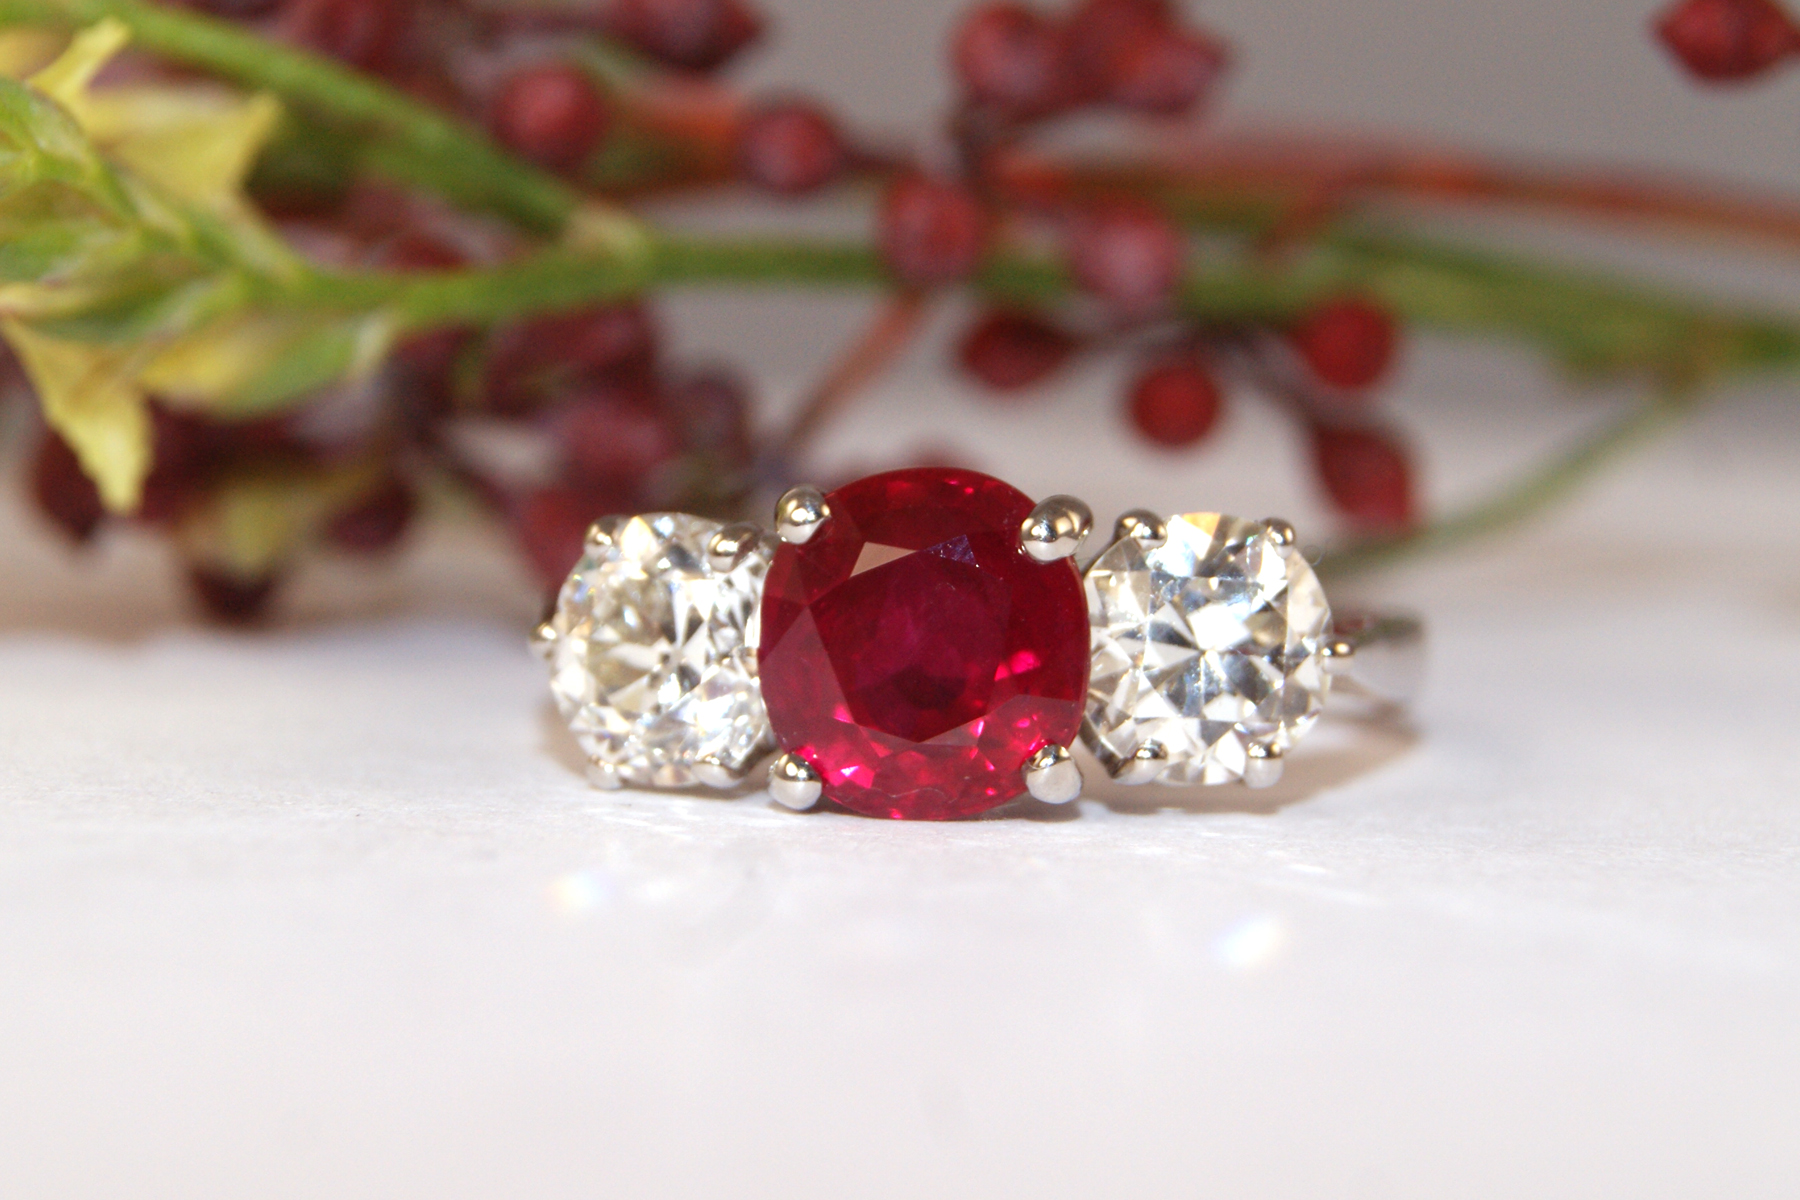 AVT6873 ruby and diamond 3 stone ring - Cobwebs